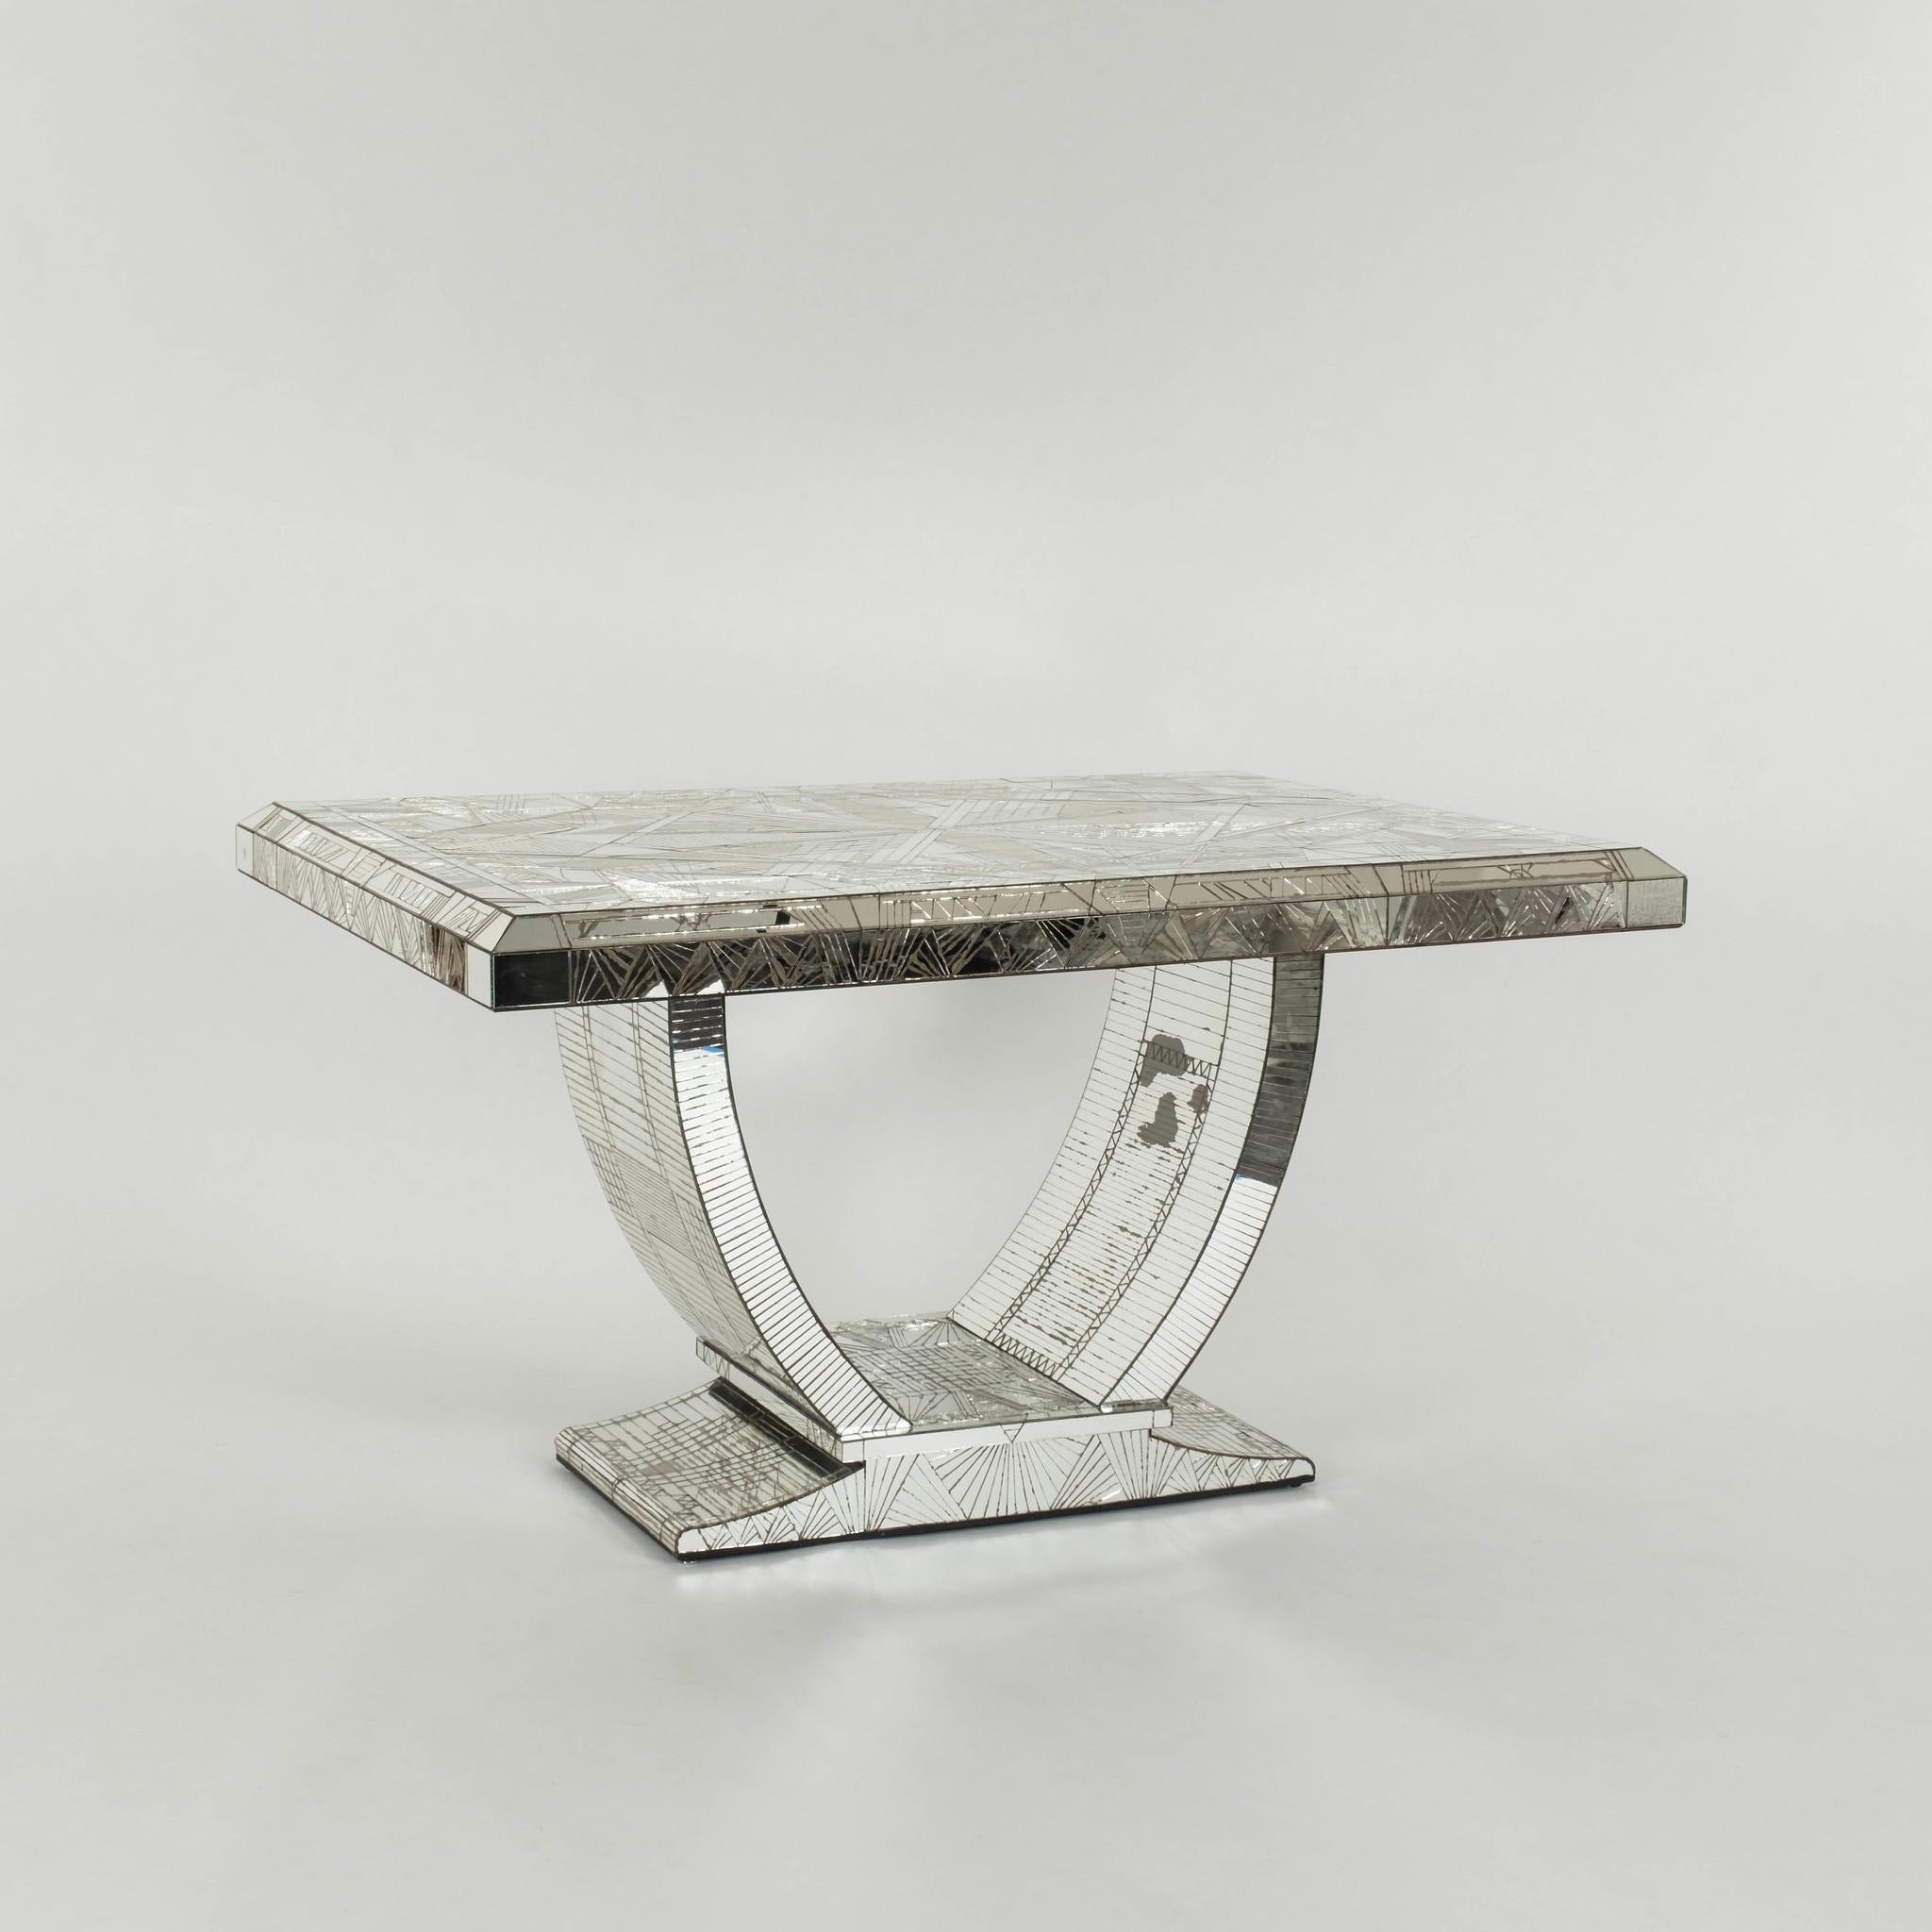 Ein seltener französischer Tisch im Art-déco-Stil des 20. Jahrhunderts von Daniel Clément. Dieser Tisch ist meisterhaft gefertigt mit individuell handgeschnittenen und aufgebrachten Spiegelkacheln, die vom Künstler entworfen wurden. Dieser Tisch